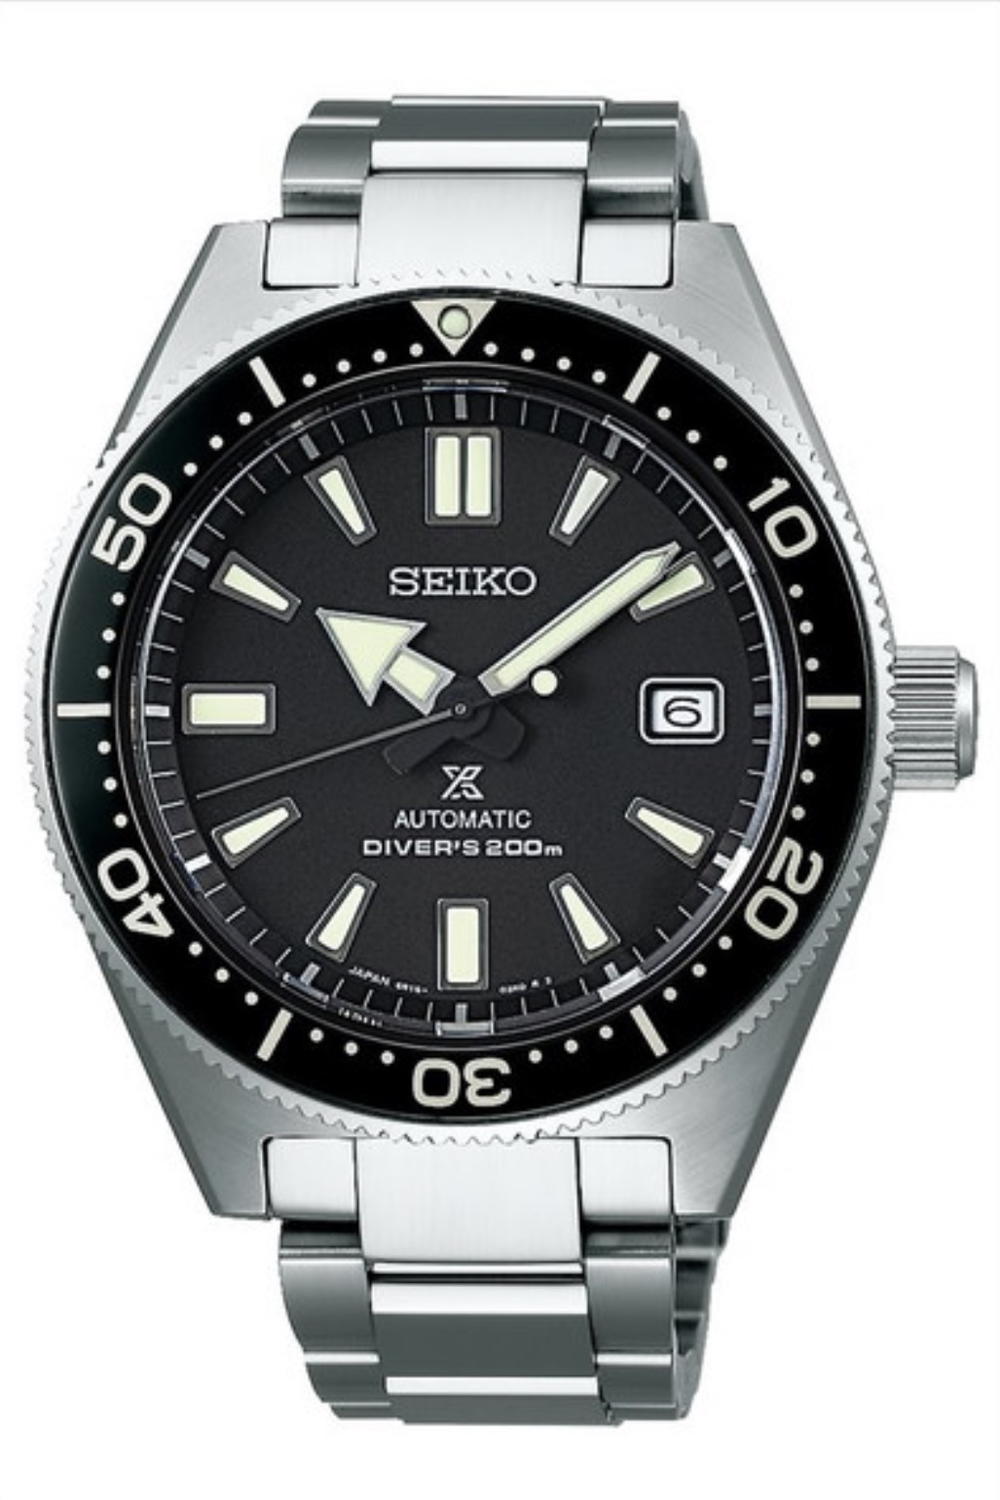 Watch Brands 101: Seiko Watches | TheWatchIndex.com